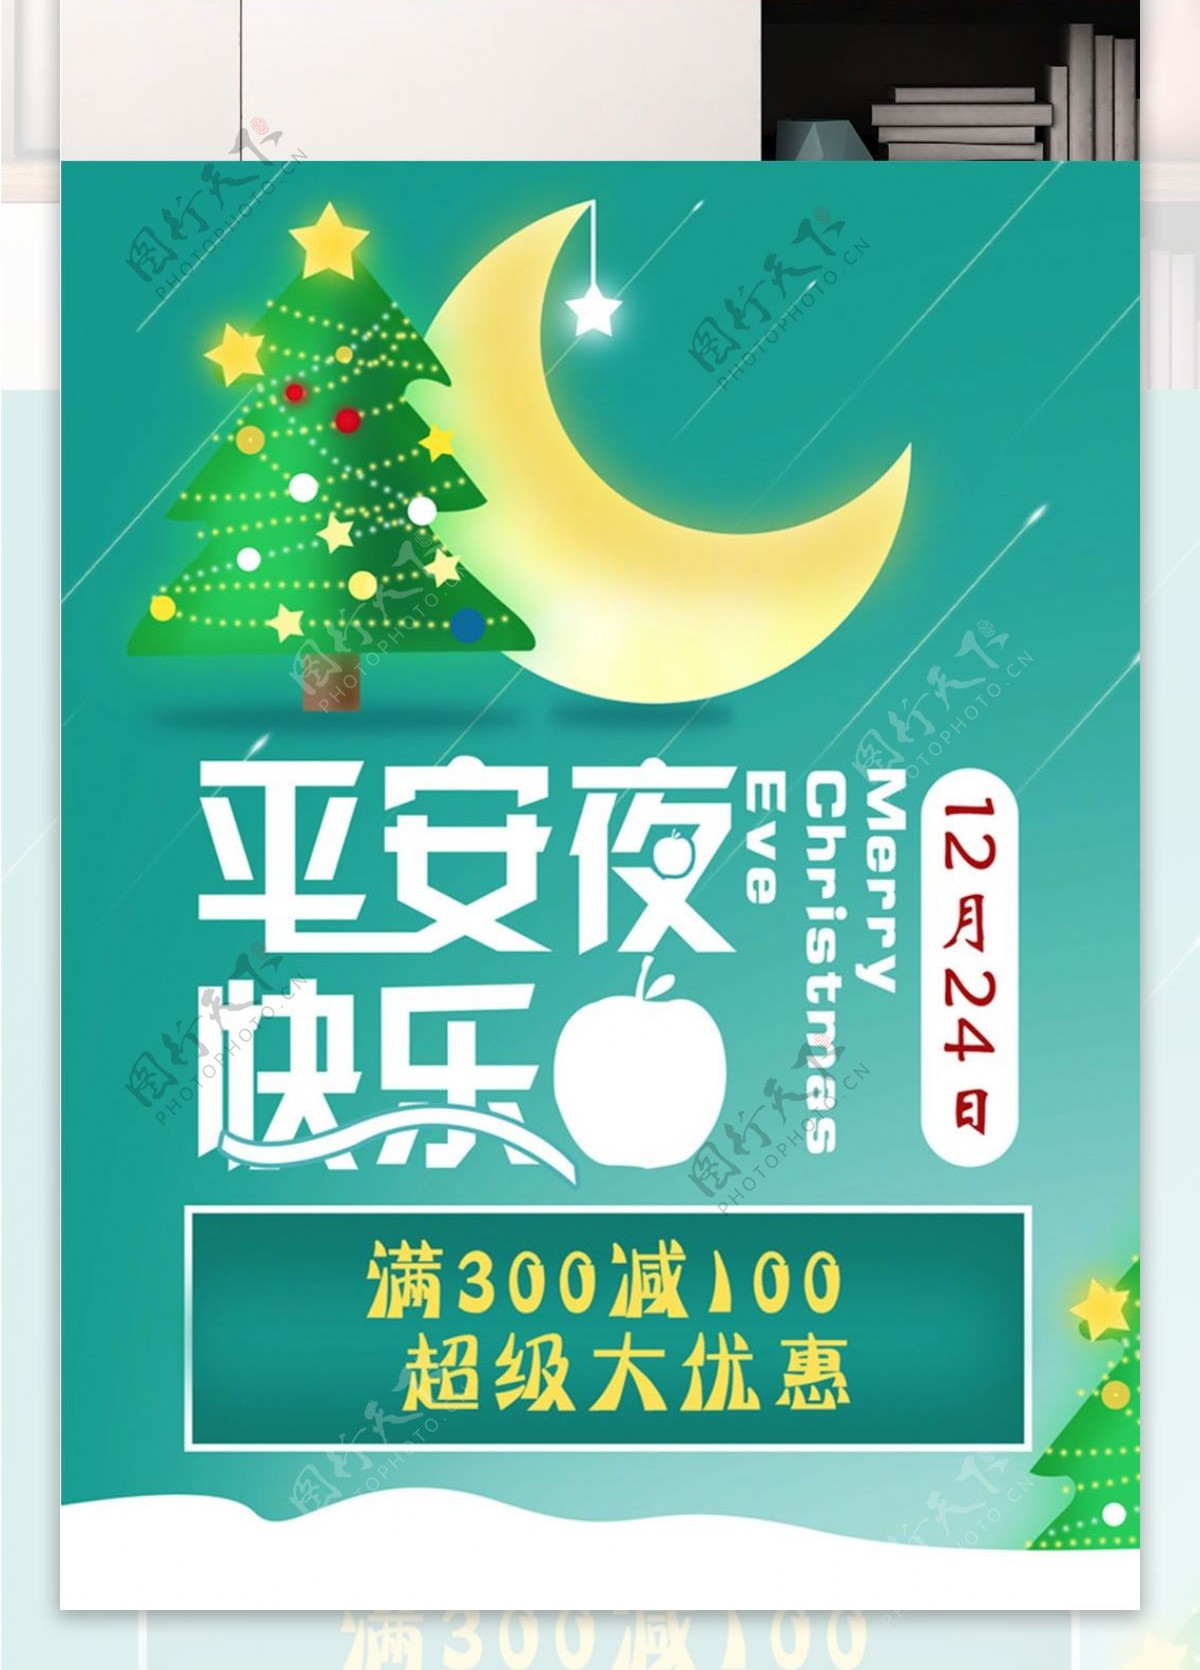 平安夜快乐圣诞节梦幻唯美海报PSD模板